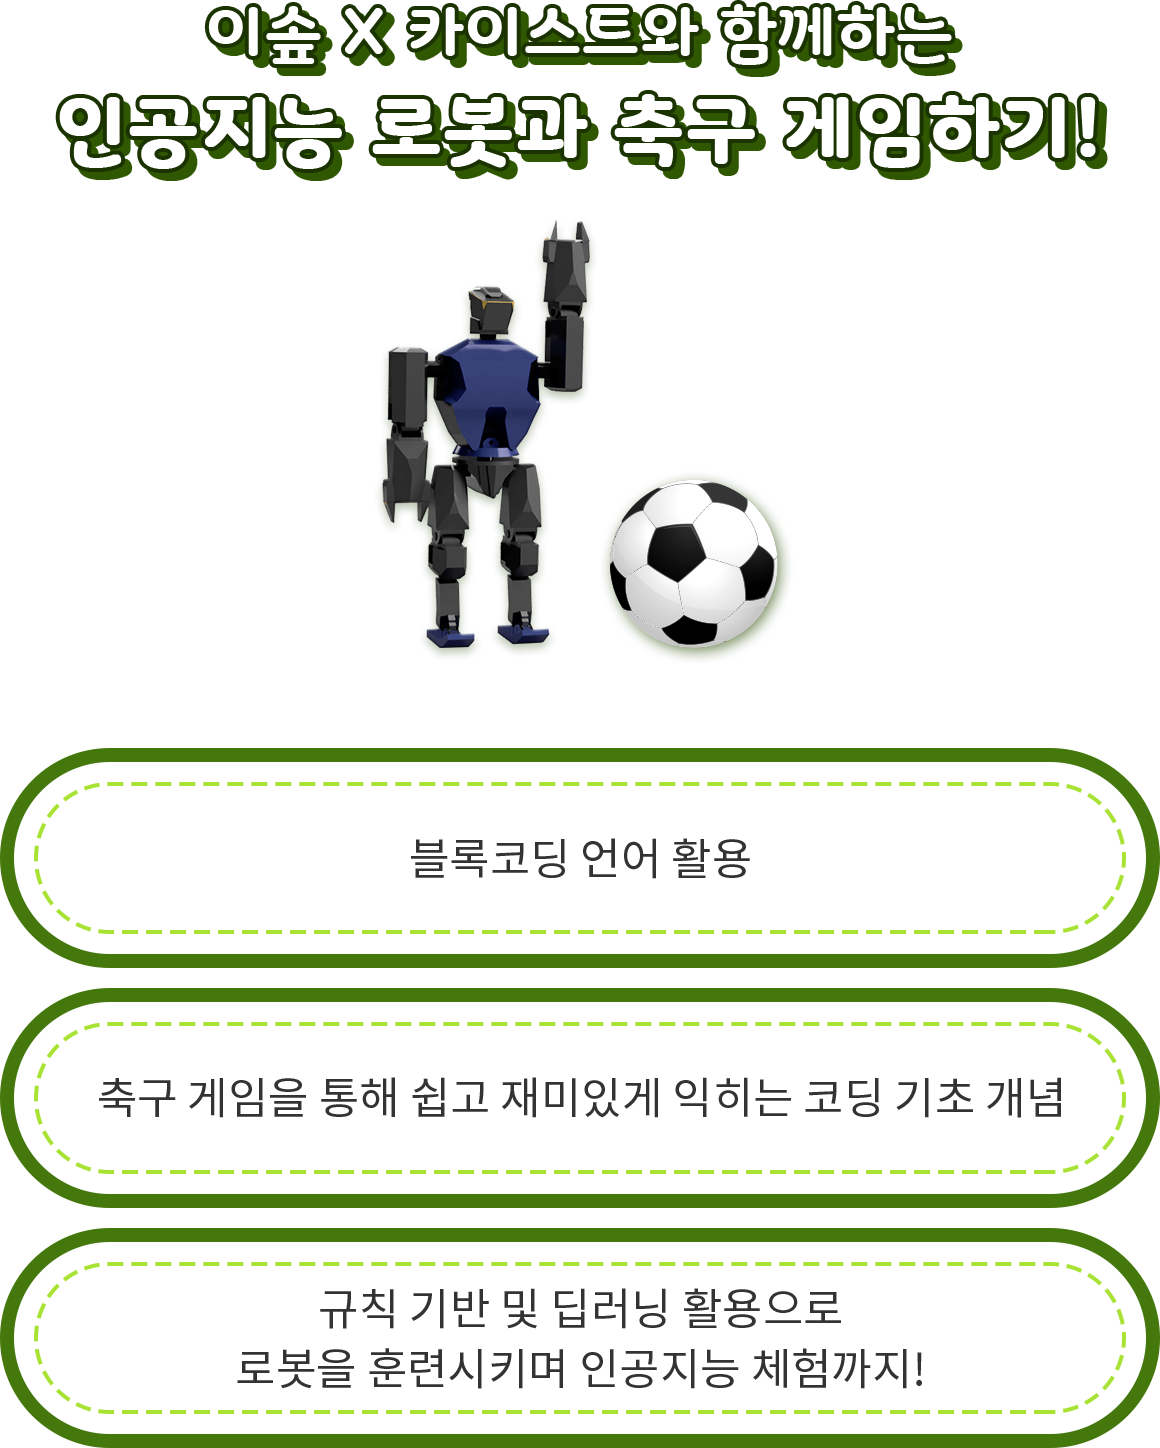 이솦 X 카이스트와 함께하는 인공지능 로봇과 축구 게임하기!